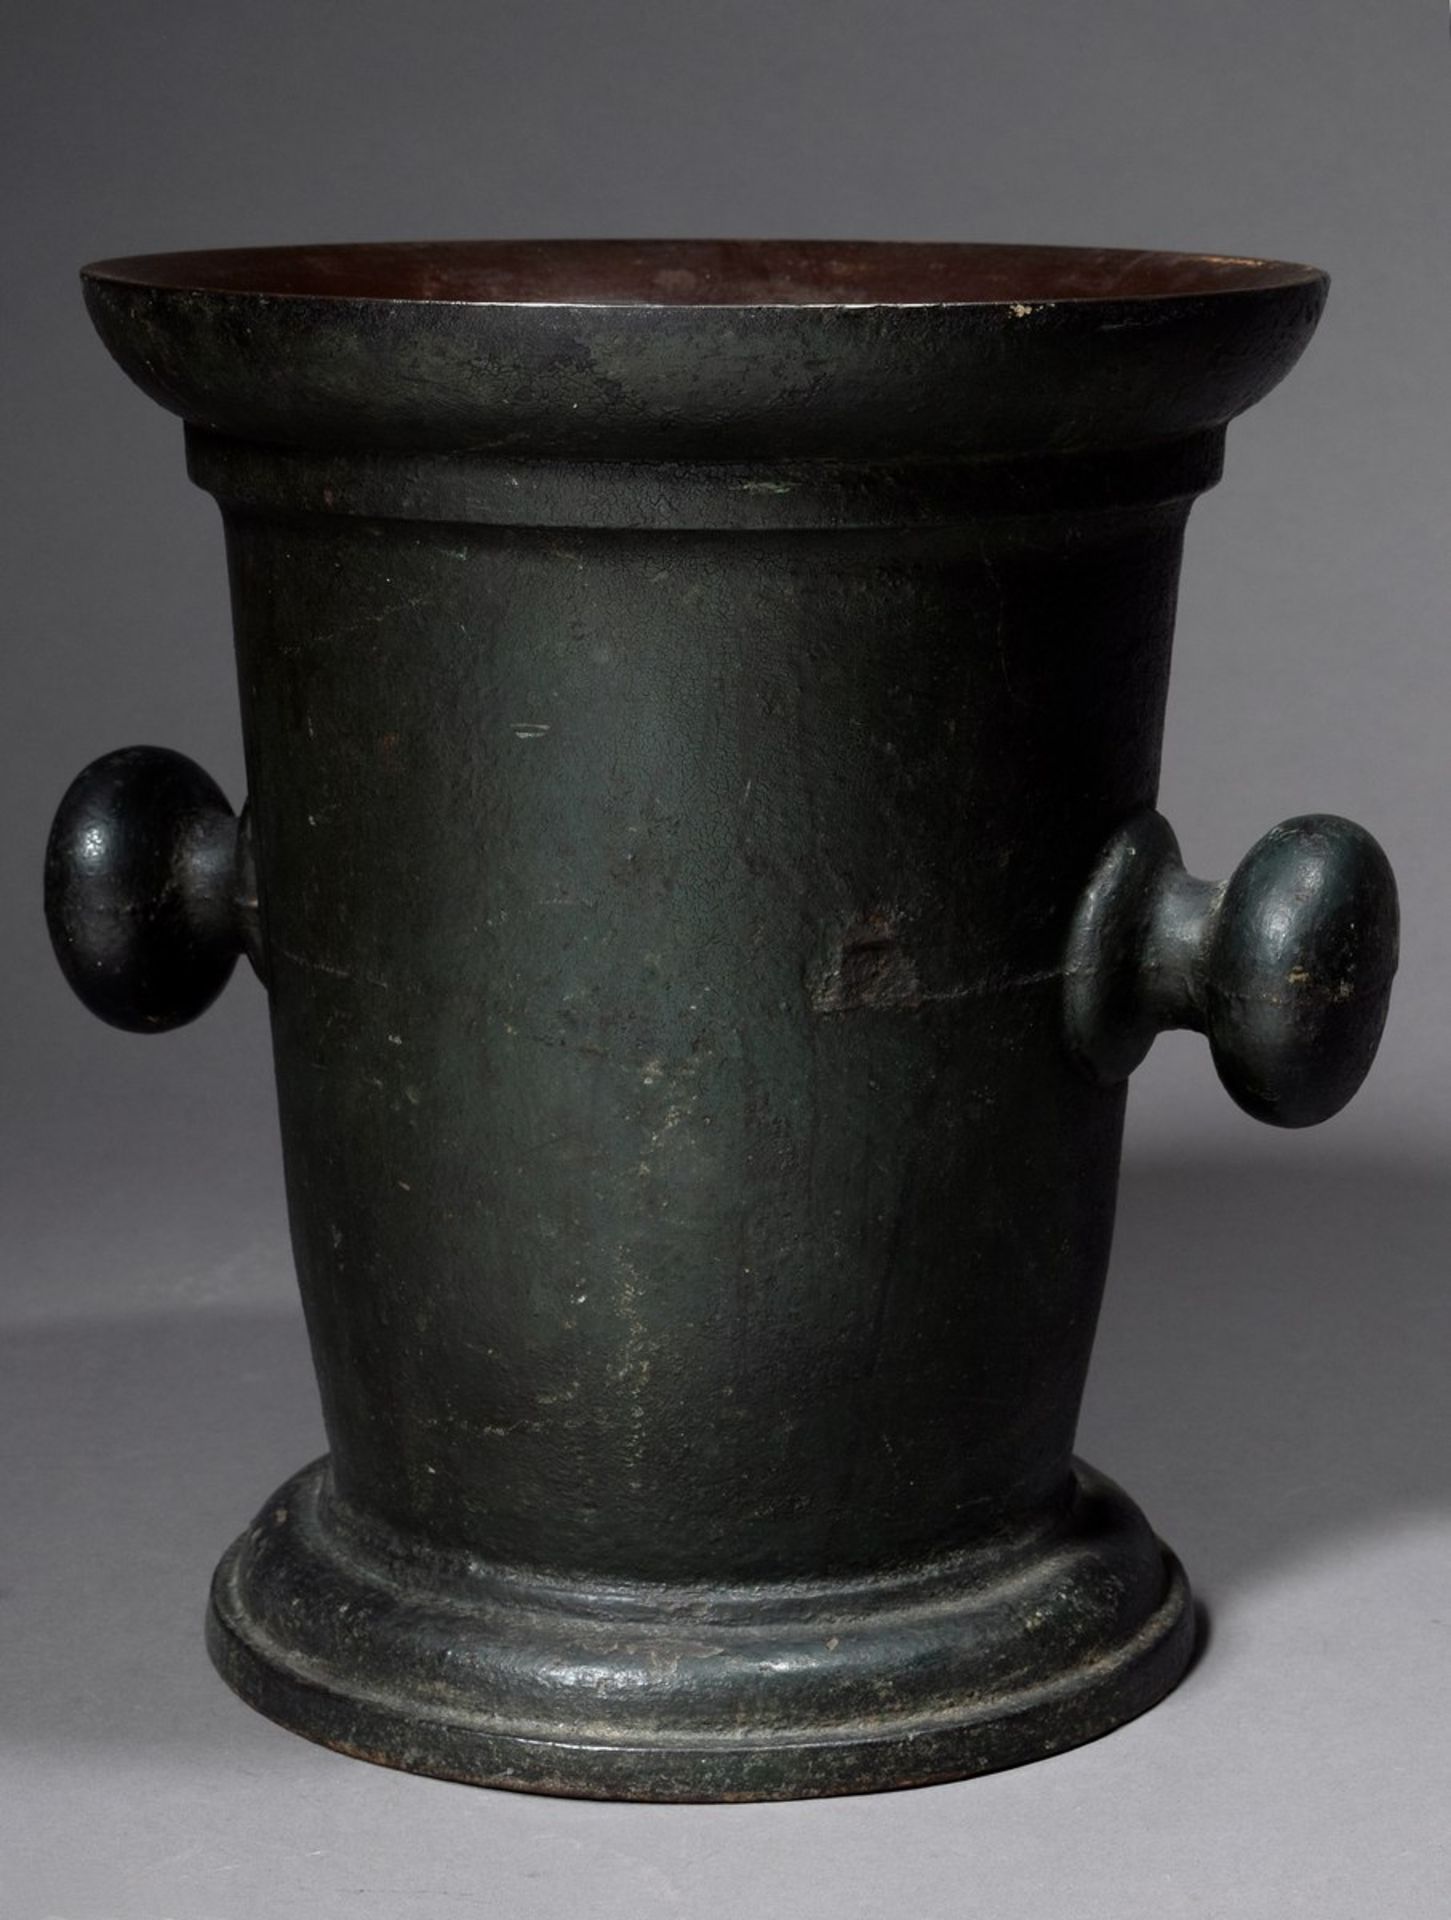 Großer Eisen Mörser mit knaufförmigen Handhaben, dunkelgrün patiniert, 19.Jh., H. 33cm, Ø 29cm,